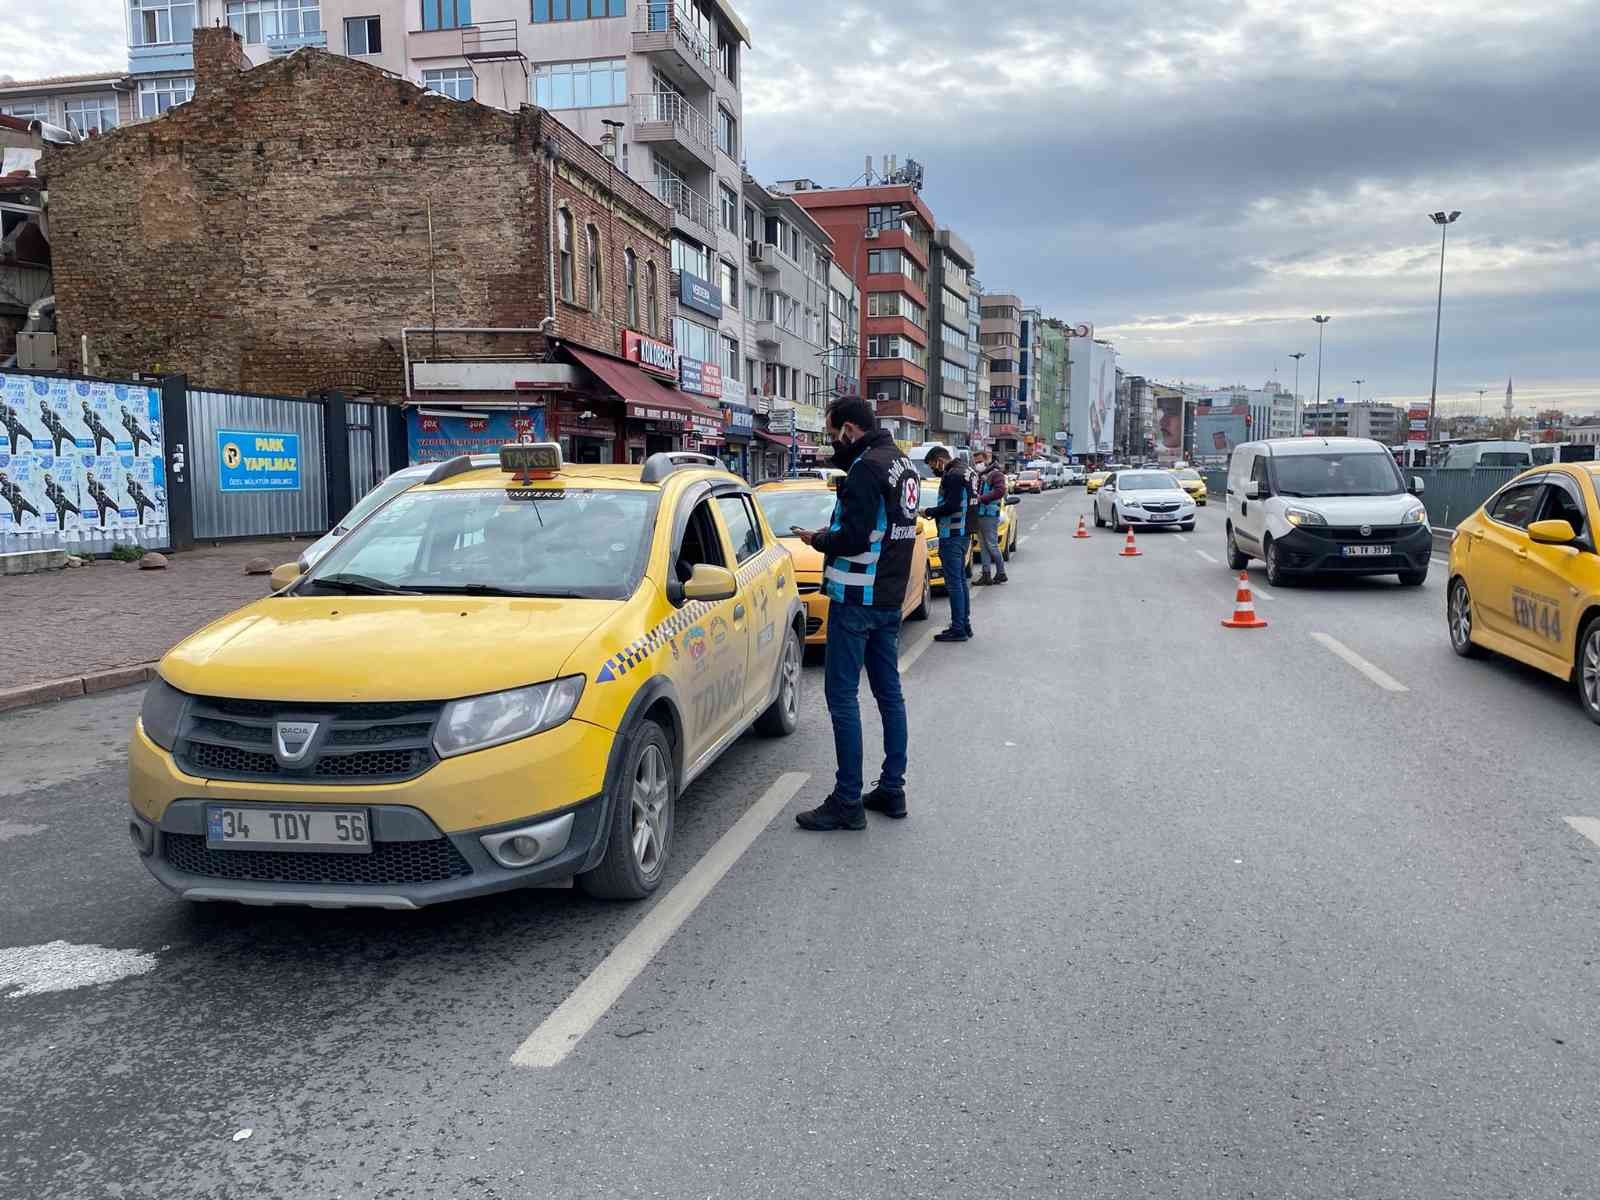 Kadıköy’de emniyet kemeri takmayan taksiciye ceza #istanbul